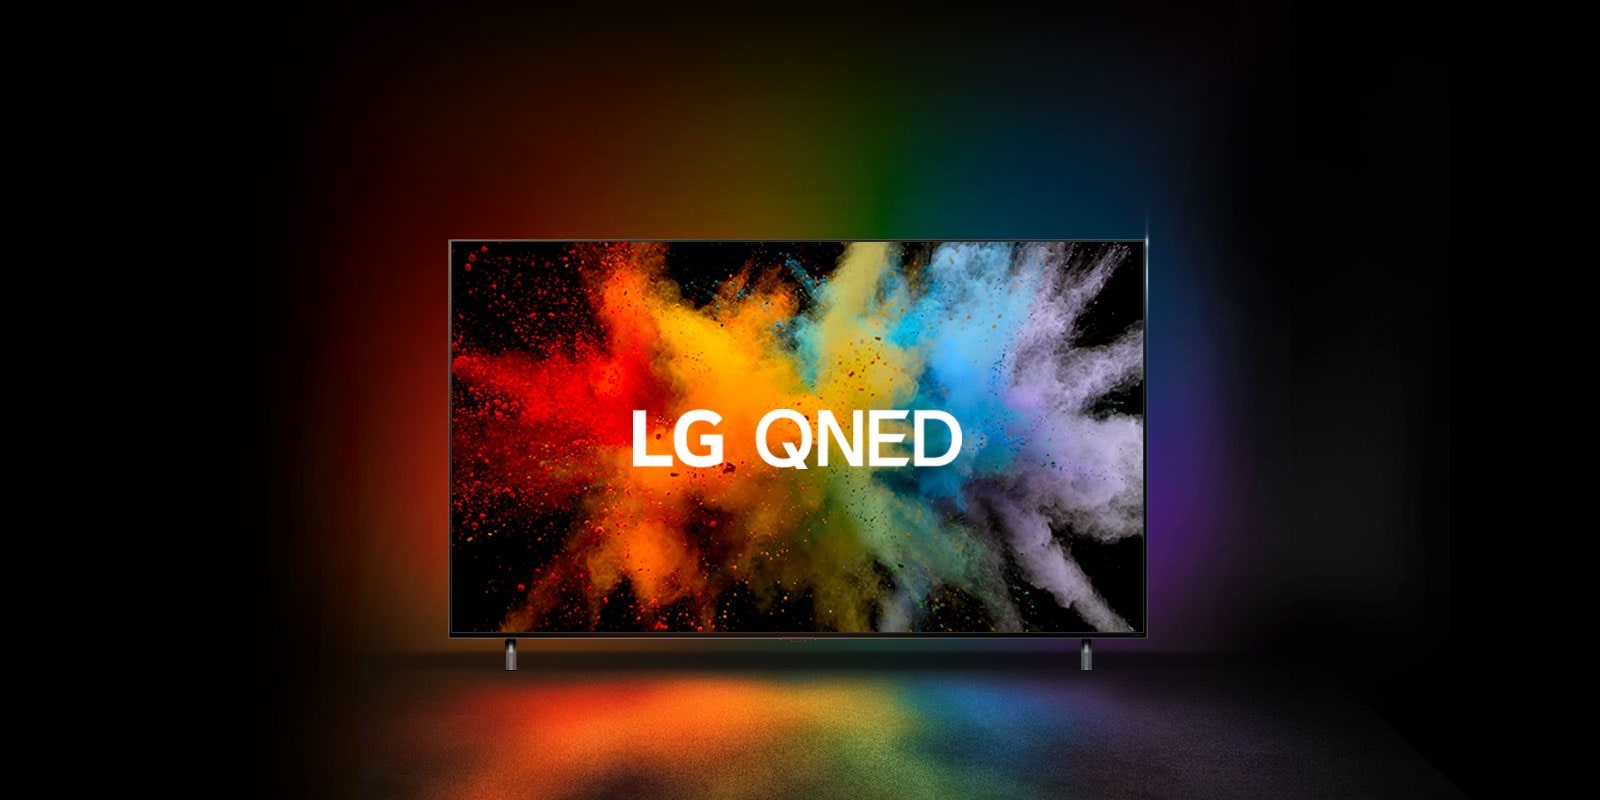 Một chiếc LG QNED trong một căn phòng tối. Bột nhuộm tạo ra sự bùng nổ của màu sắc cầu vồng trên TV.